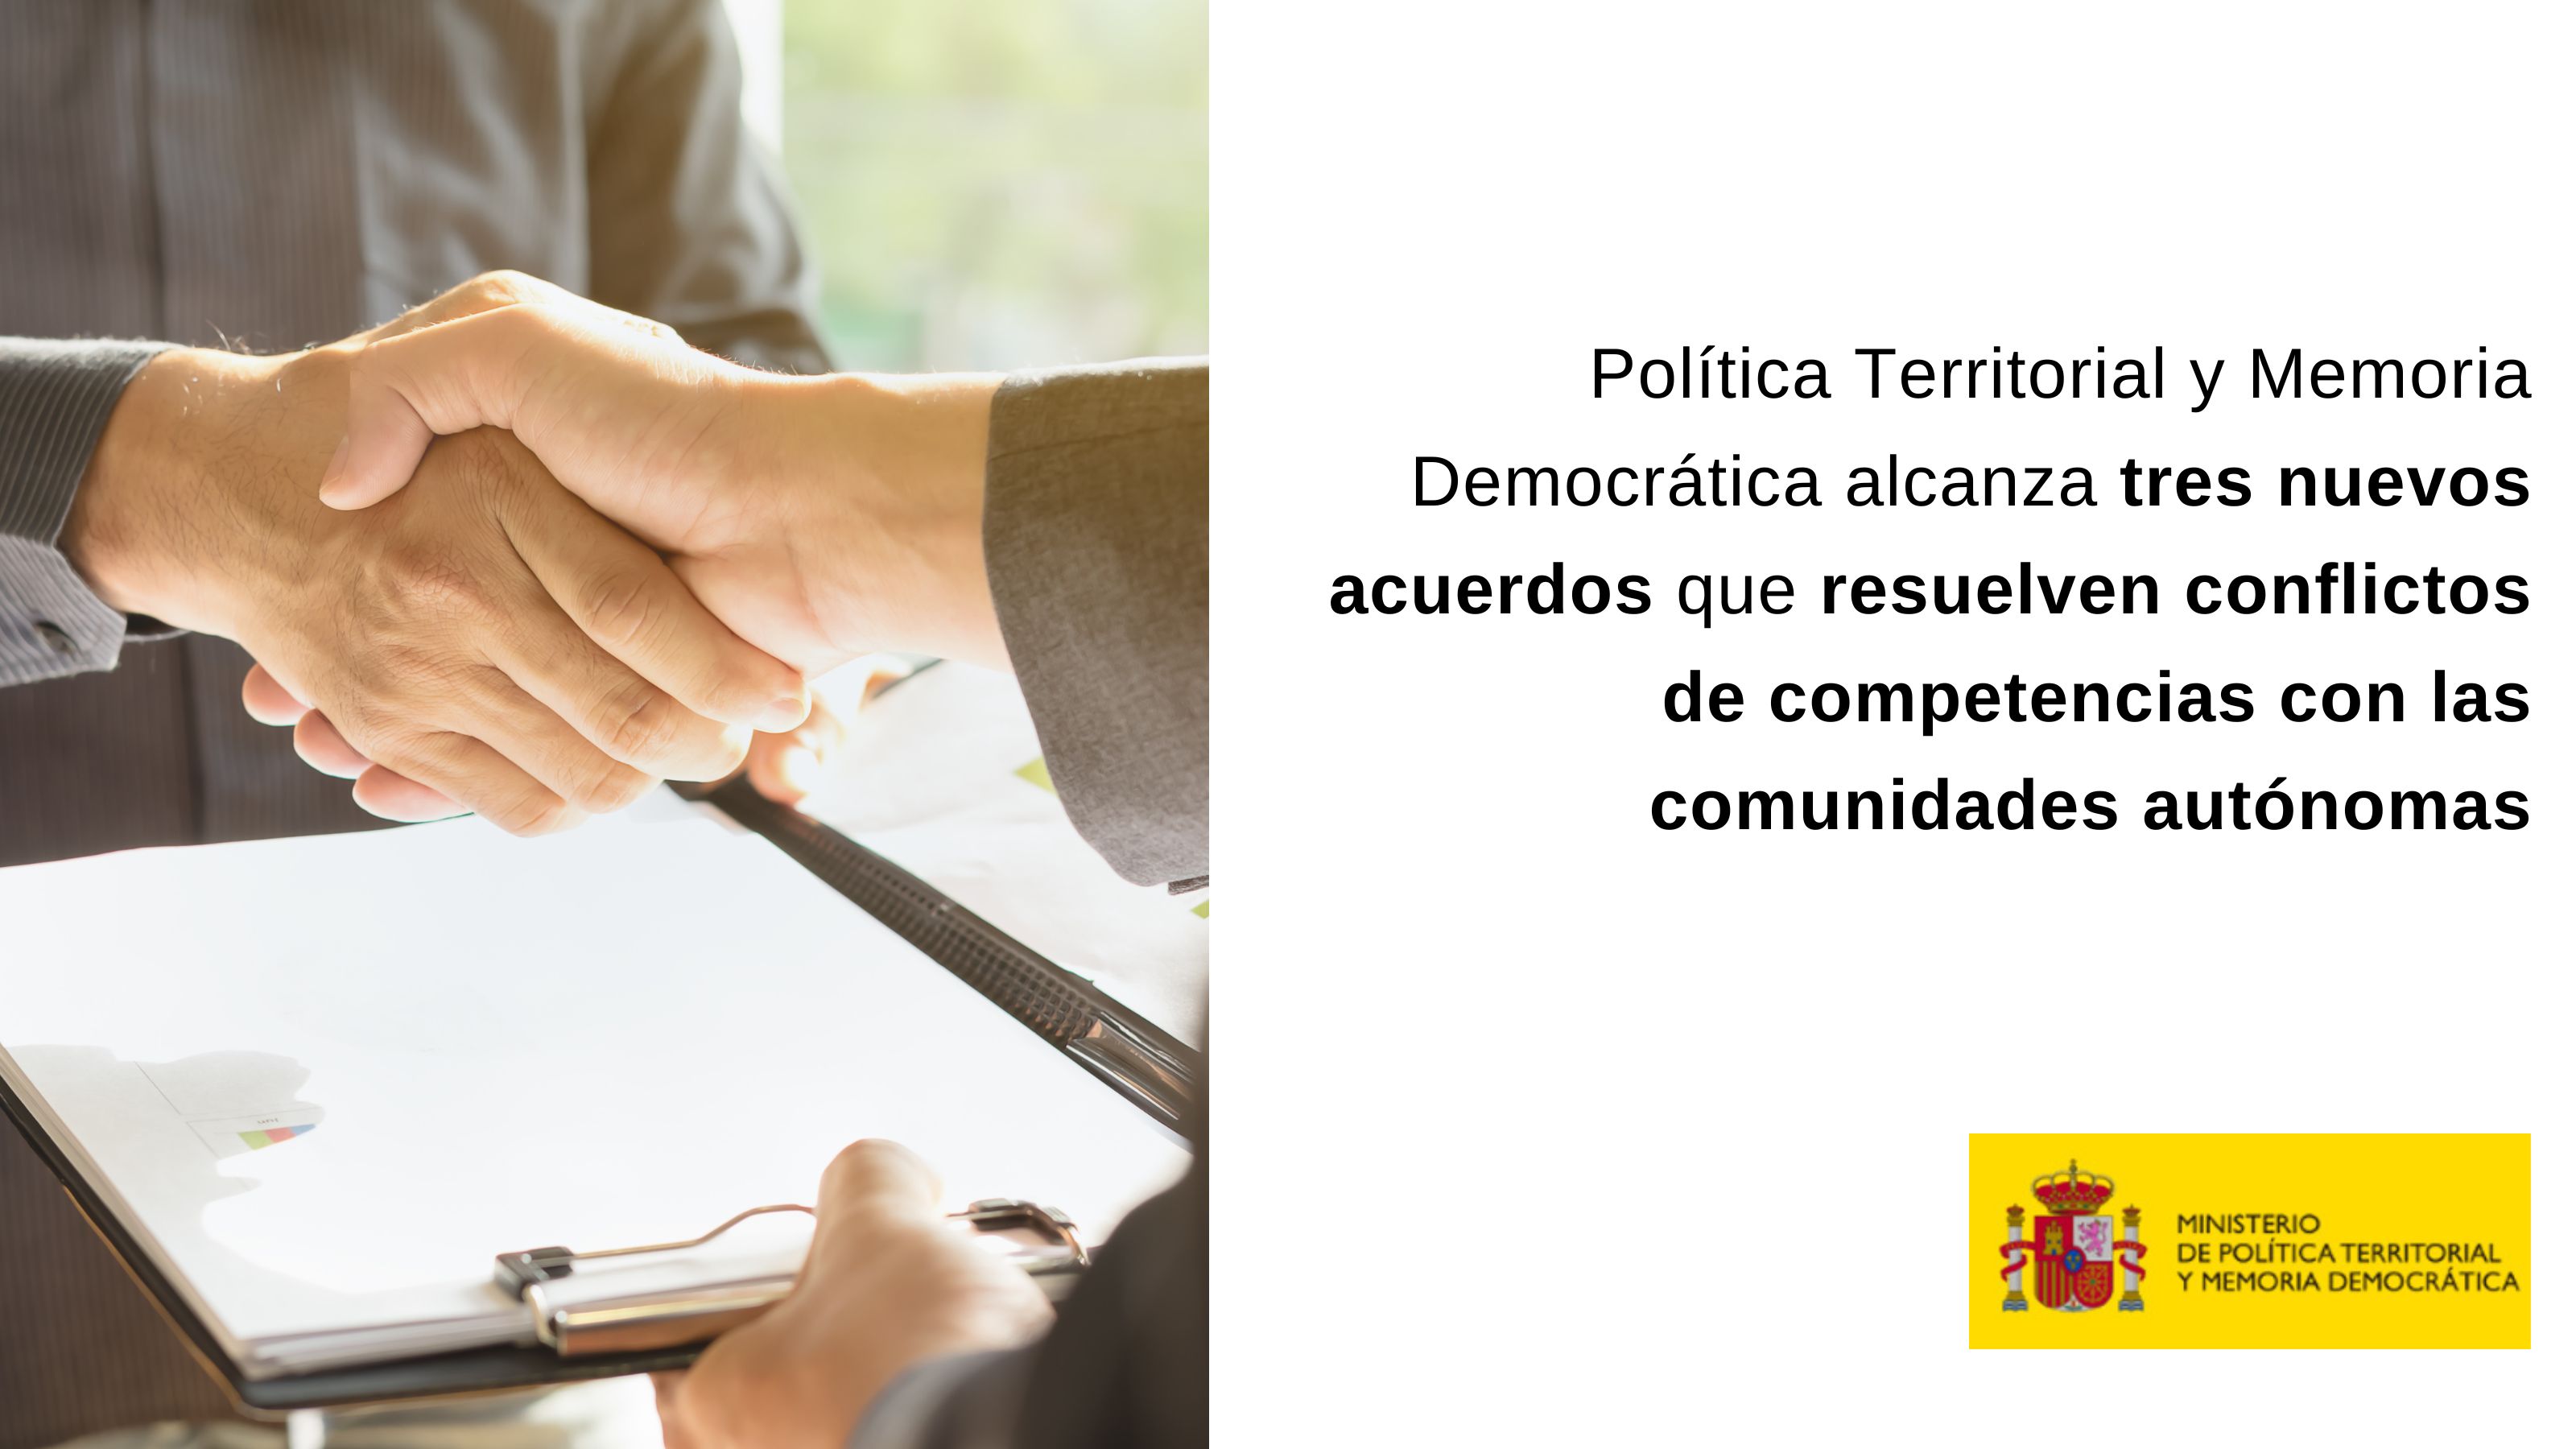 El Ministerio de Política Territorial y Memoria Democrática cierra tres nuevos acuerdos con Andalucía, Cataluña y País Vasco 